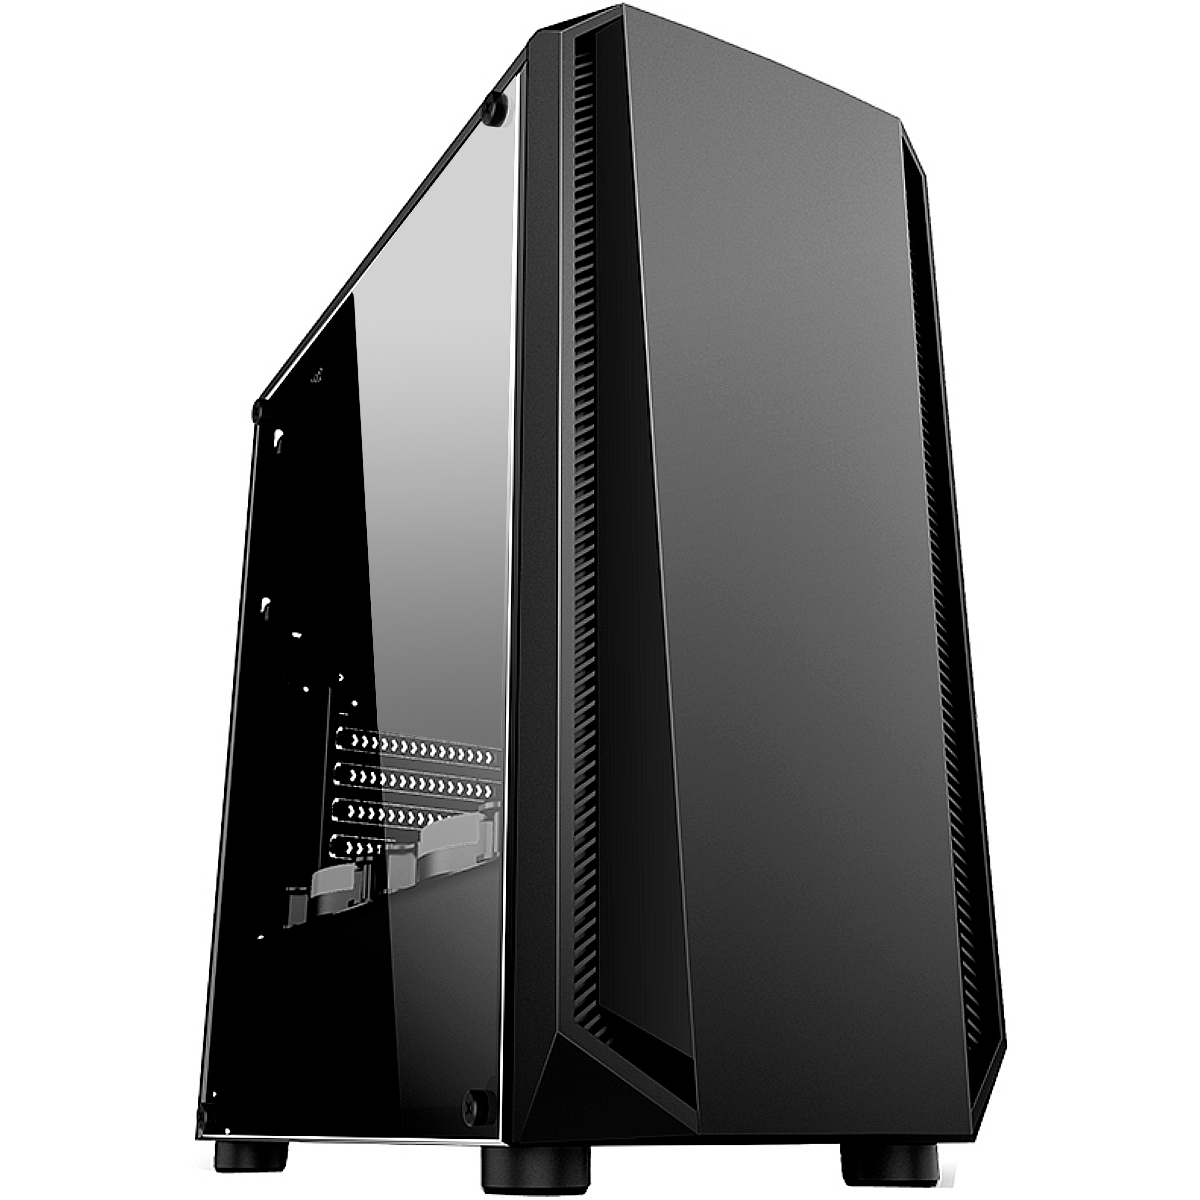 PC Gamer Ryzen 3600 - Asus Prime A320M-K/BR, 16GB DDR4 (2x8GB), SSD 240GB, AMD Radeon RX 570